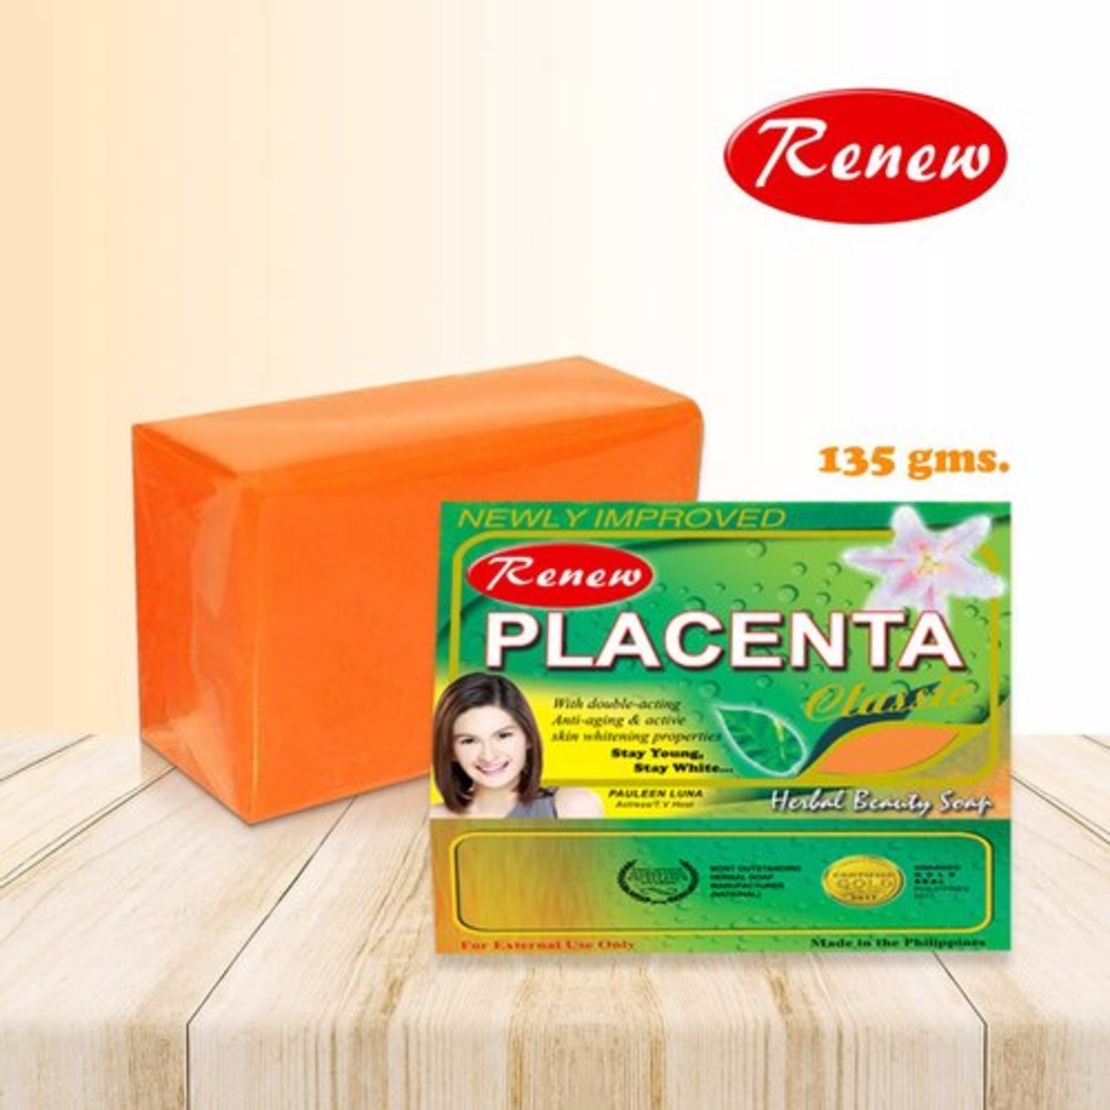 Renew Placenta Classic